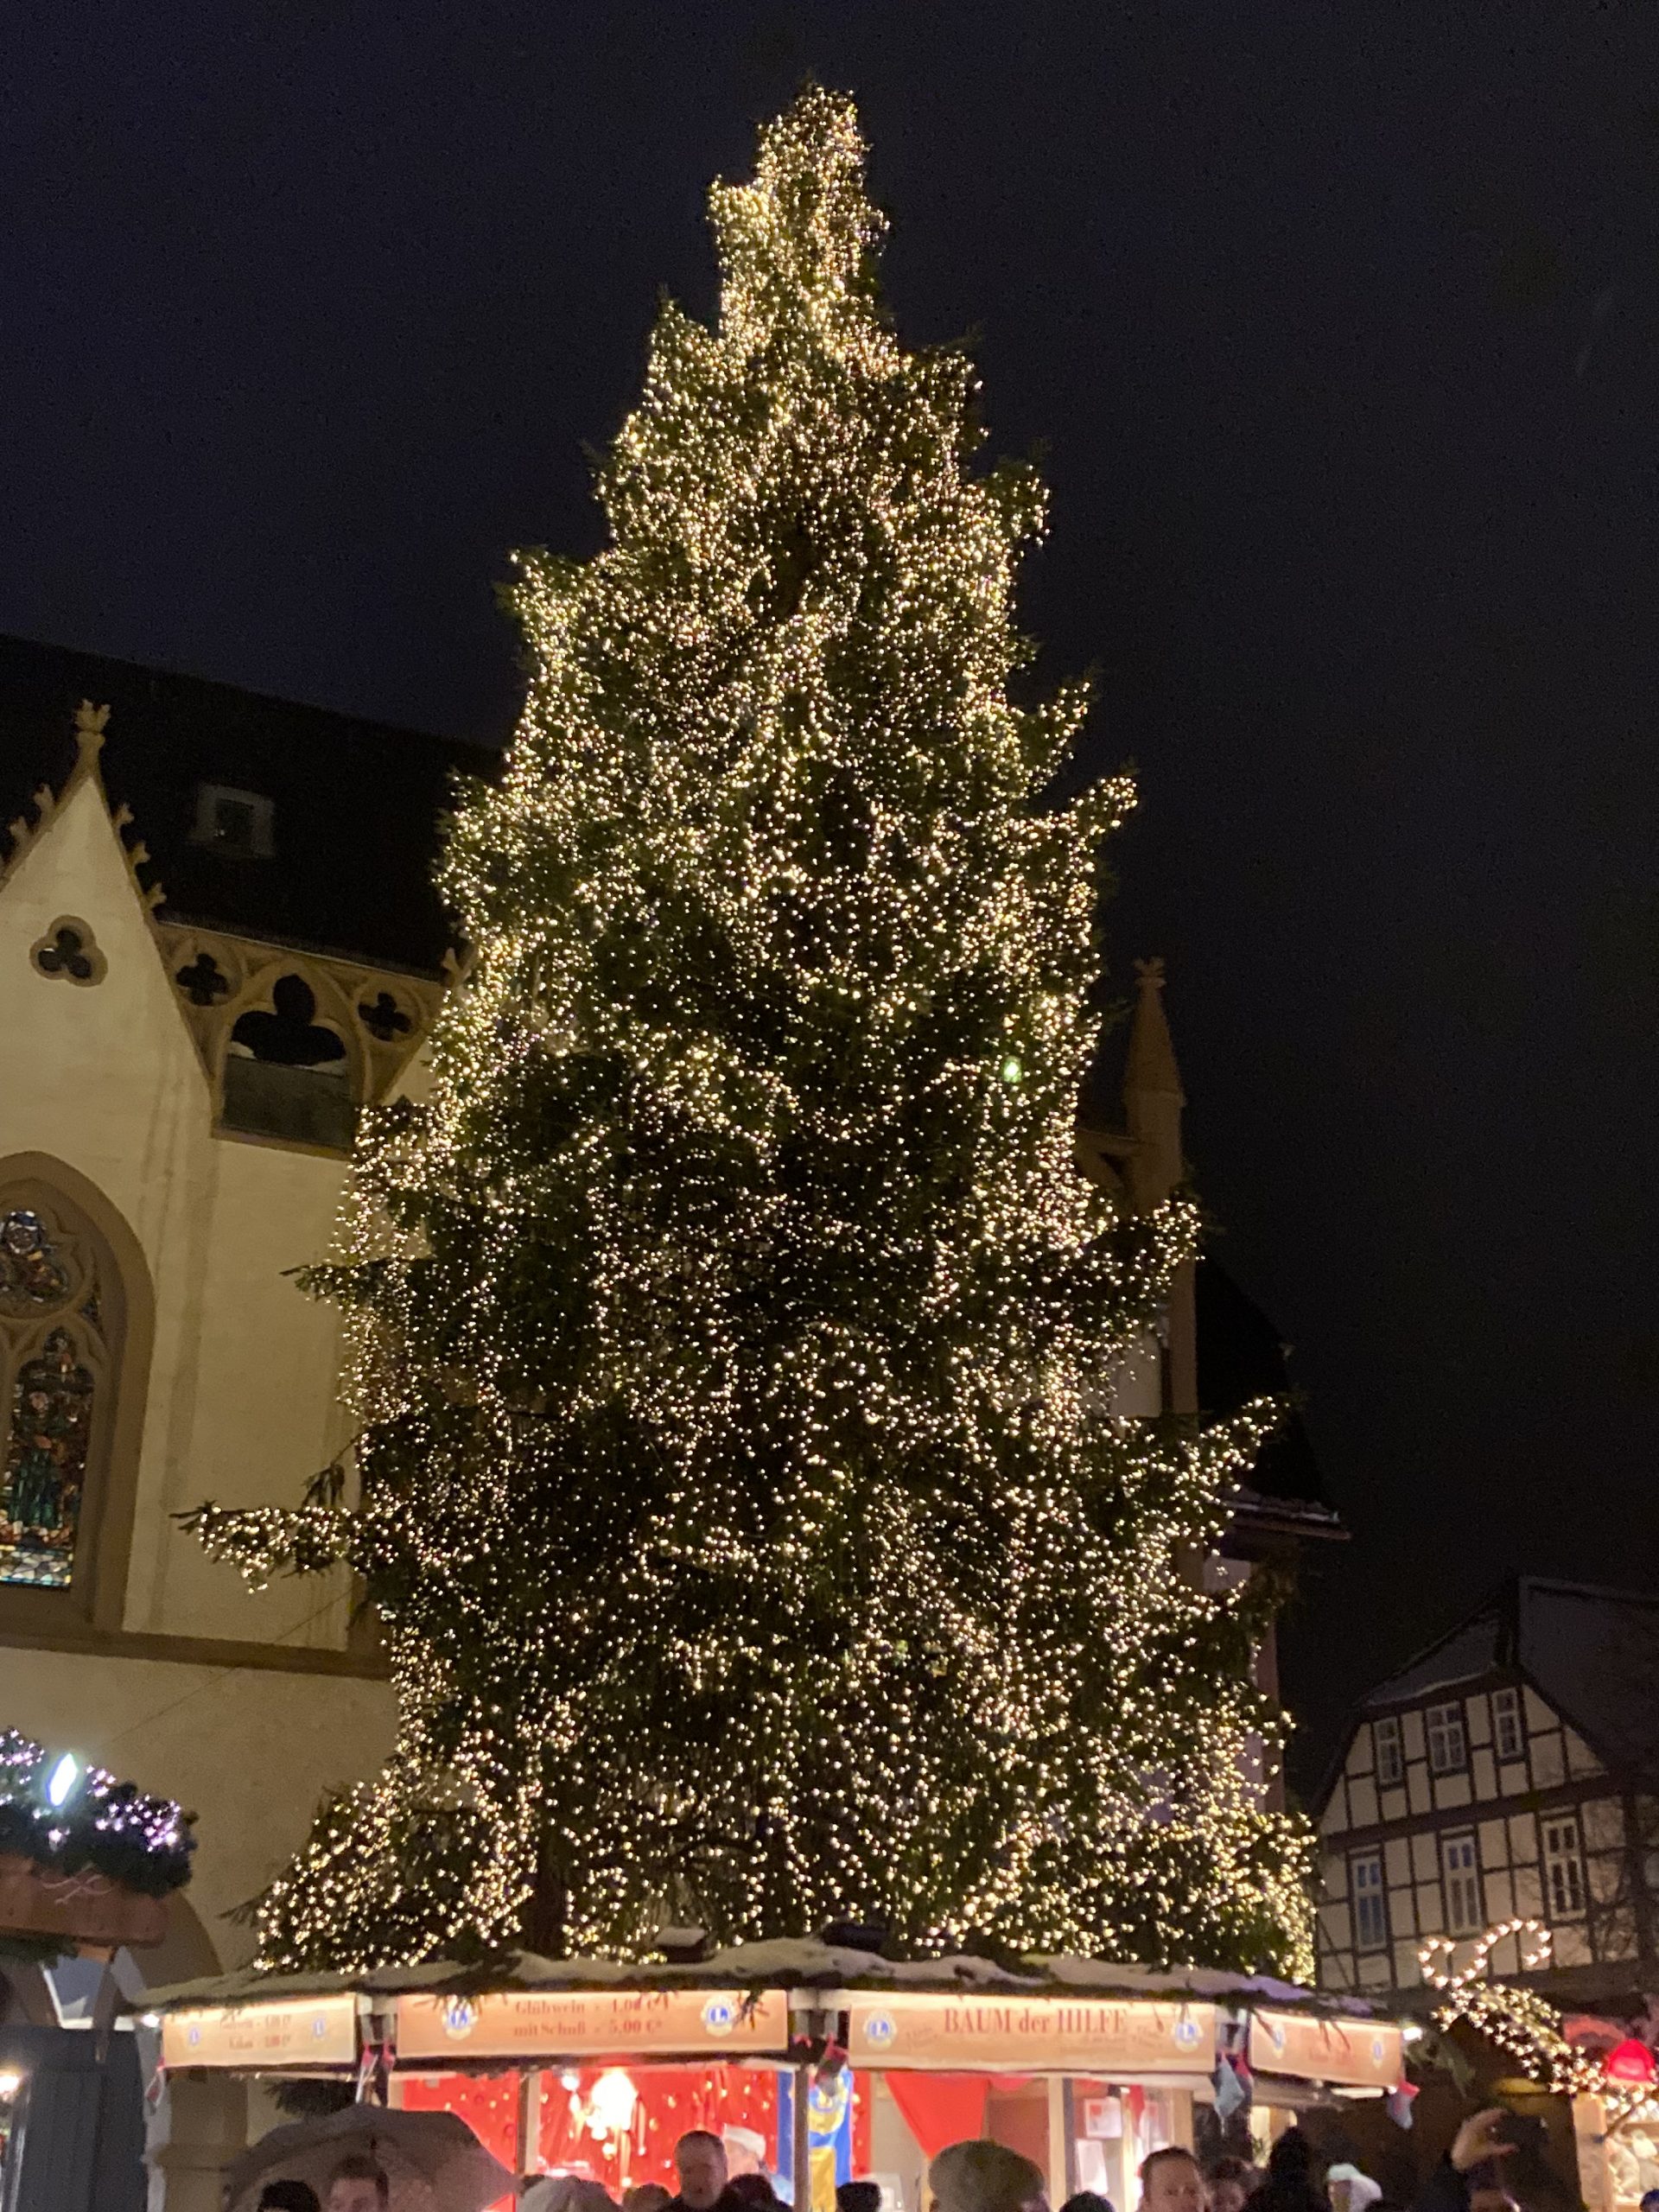 Ein großer Weihnachtsbaum, geschmückt mit funkelnden Lichtern und farbenfrohen Ornamenten, steht stolz in der Mitte eines belebten Stadtplatzes und verbreitet Weihnachtsstimmung bei allen Vorbeikommenden.